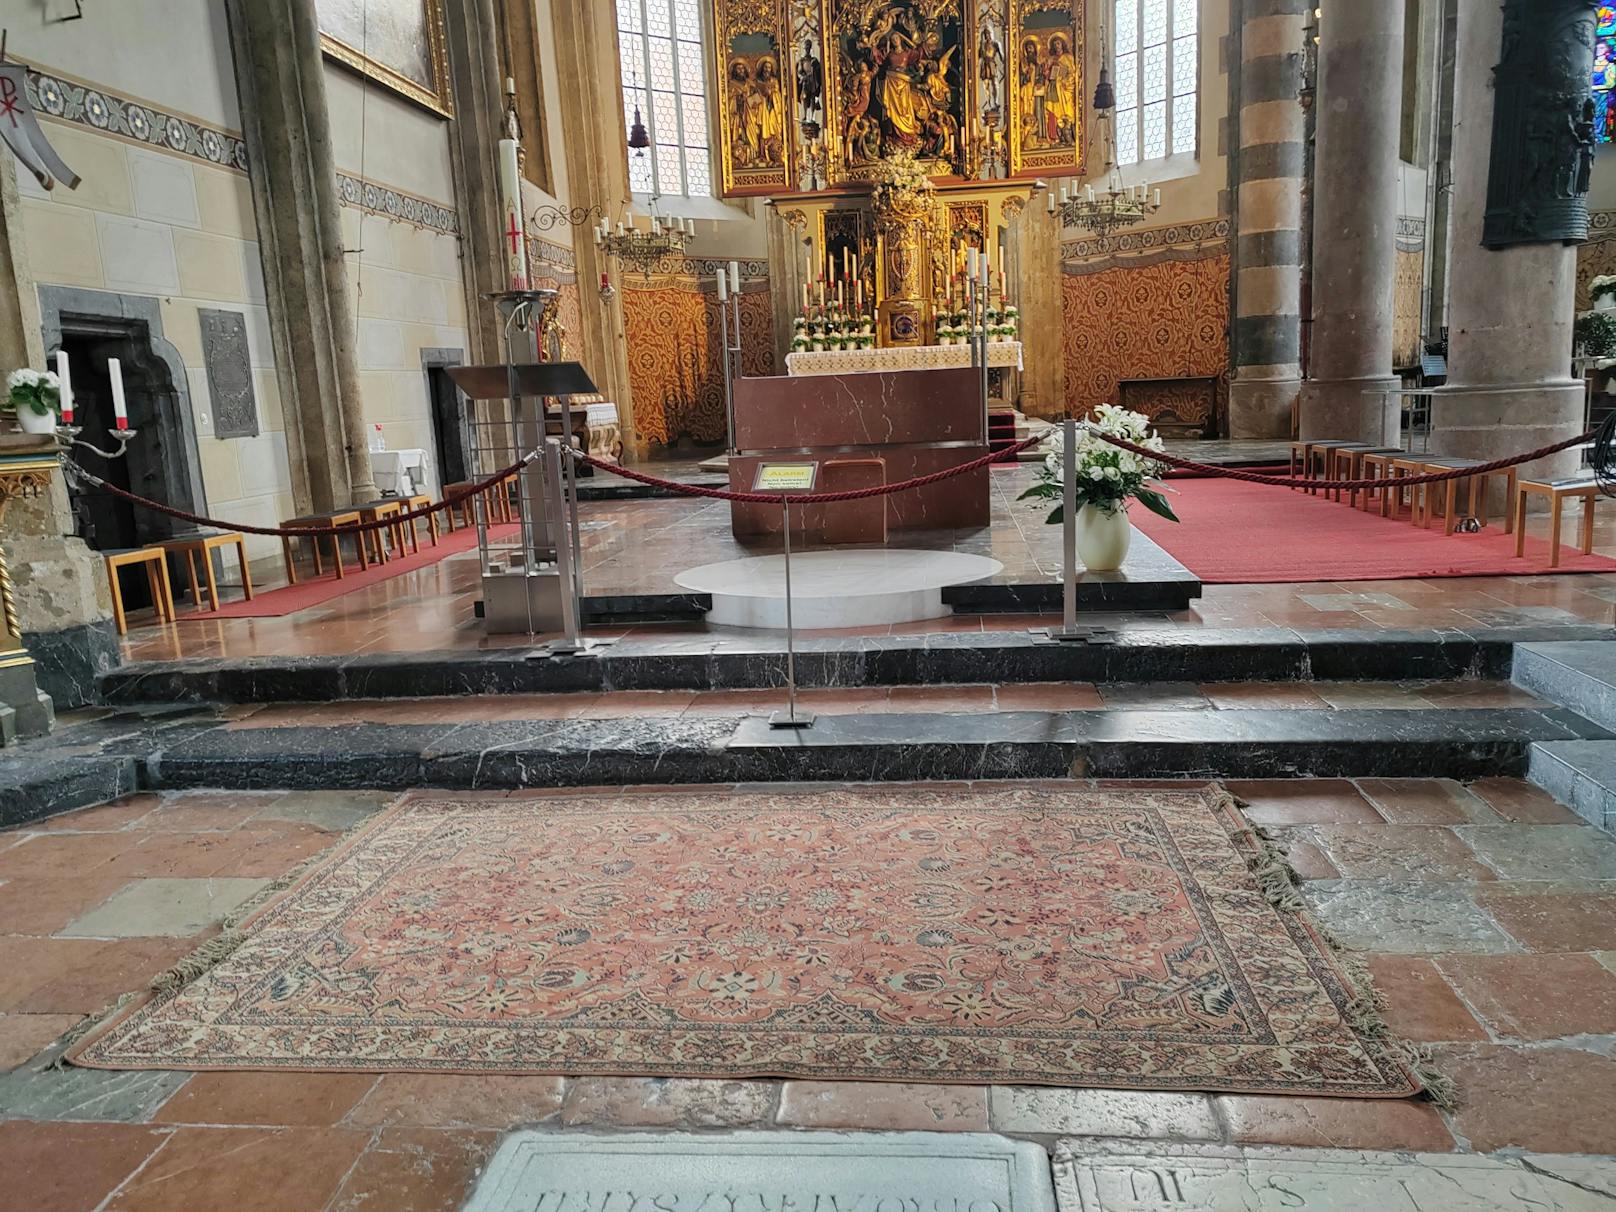 Am 28. April verunstaltete eine bislang unbekannte Täterschaft den Innenraum der Pfarrkirche "Maria Himmelfahrt" in Schwaz durch Graffiti. Der Steinboden vor dem Altar sowie ein Beichtsuhl wurde mittels blauem Lackspray besprüht.